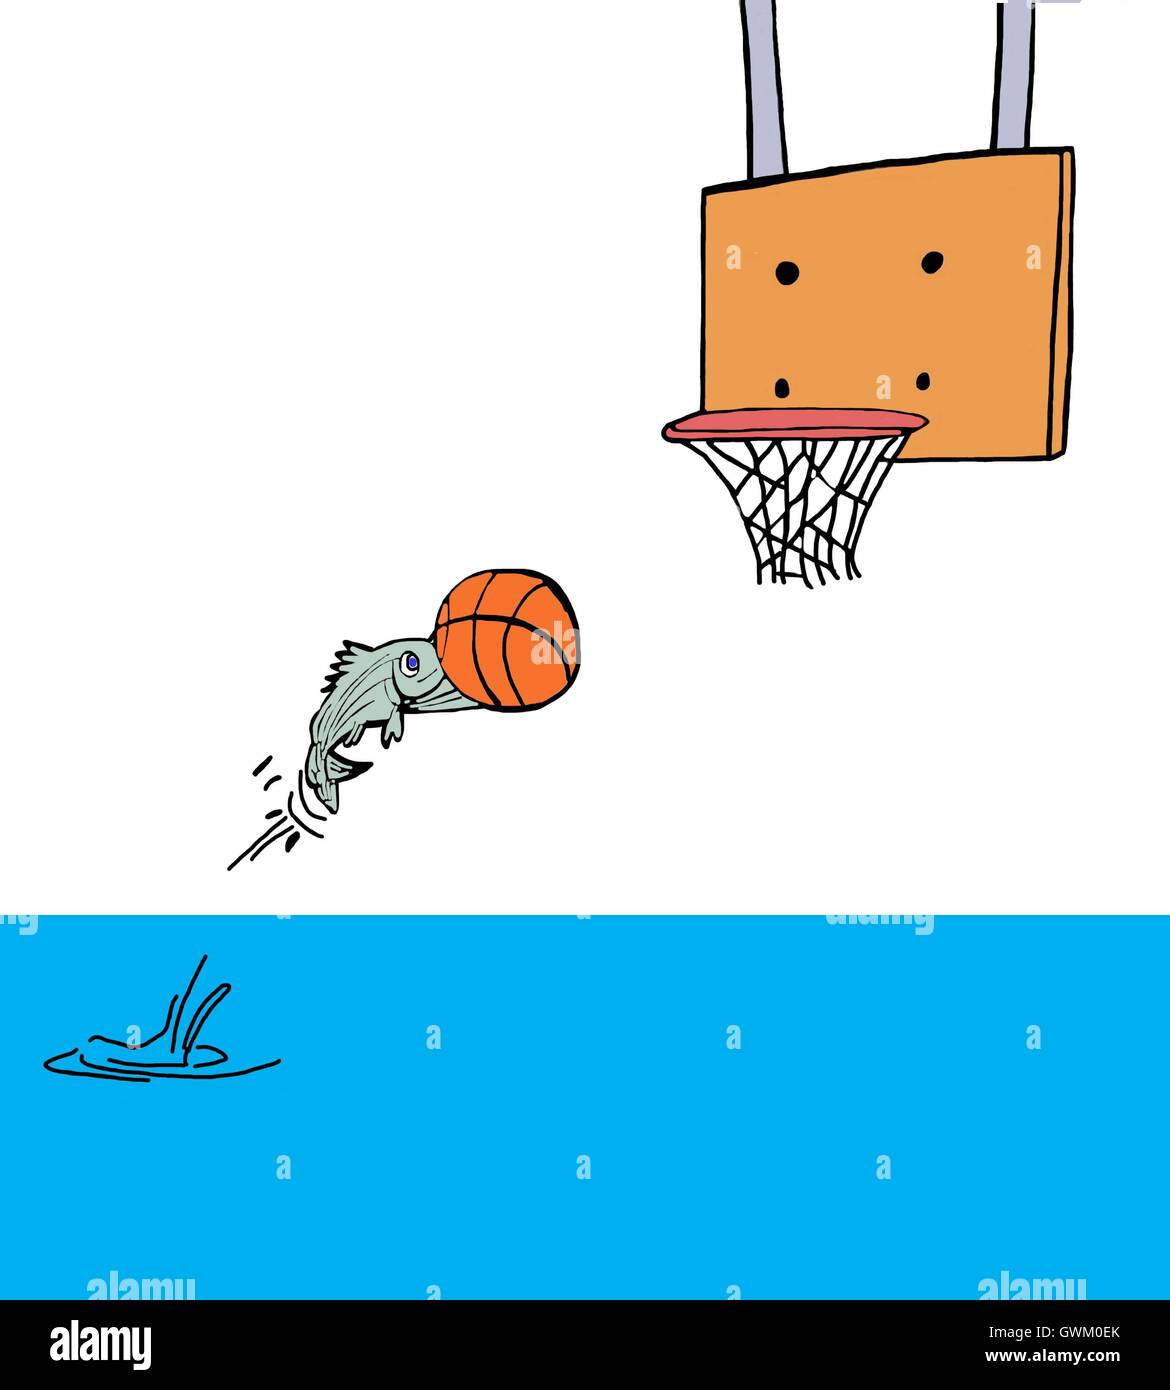 Farbe Abbildung eines Fisches aus Wasser setzen einen Basketball durch den Reifen springen. Stockfoto